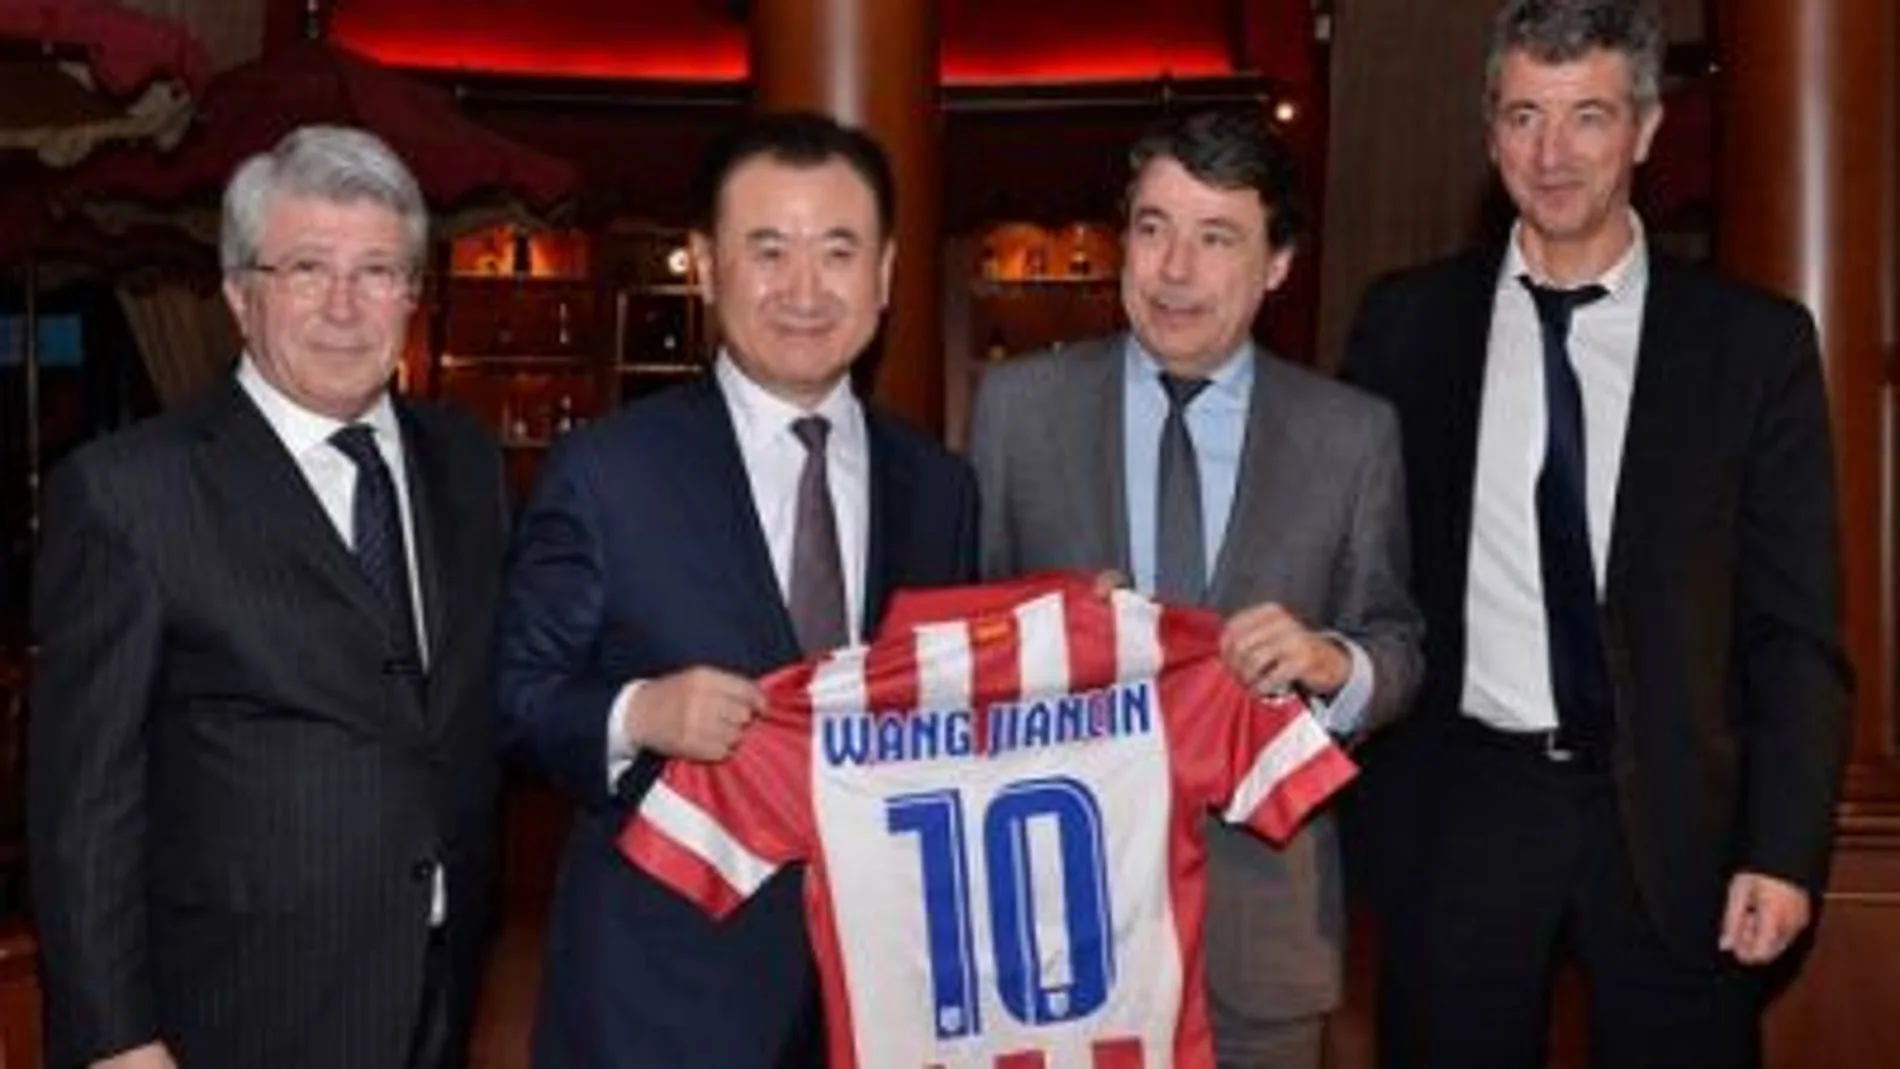 Las negociaciones entre el Atlético y Wang Jianlin han fructificado en la dirección idónea